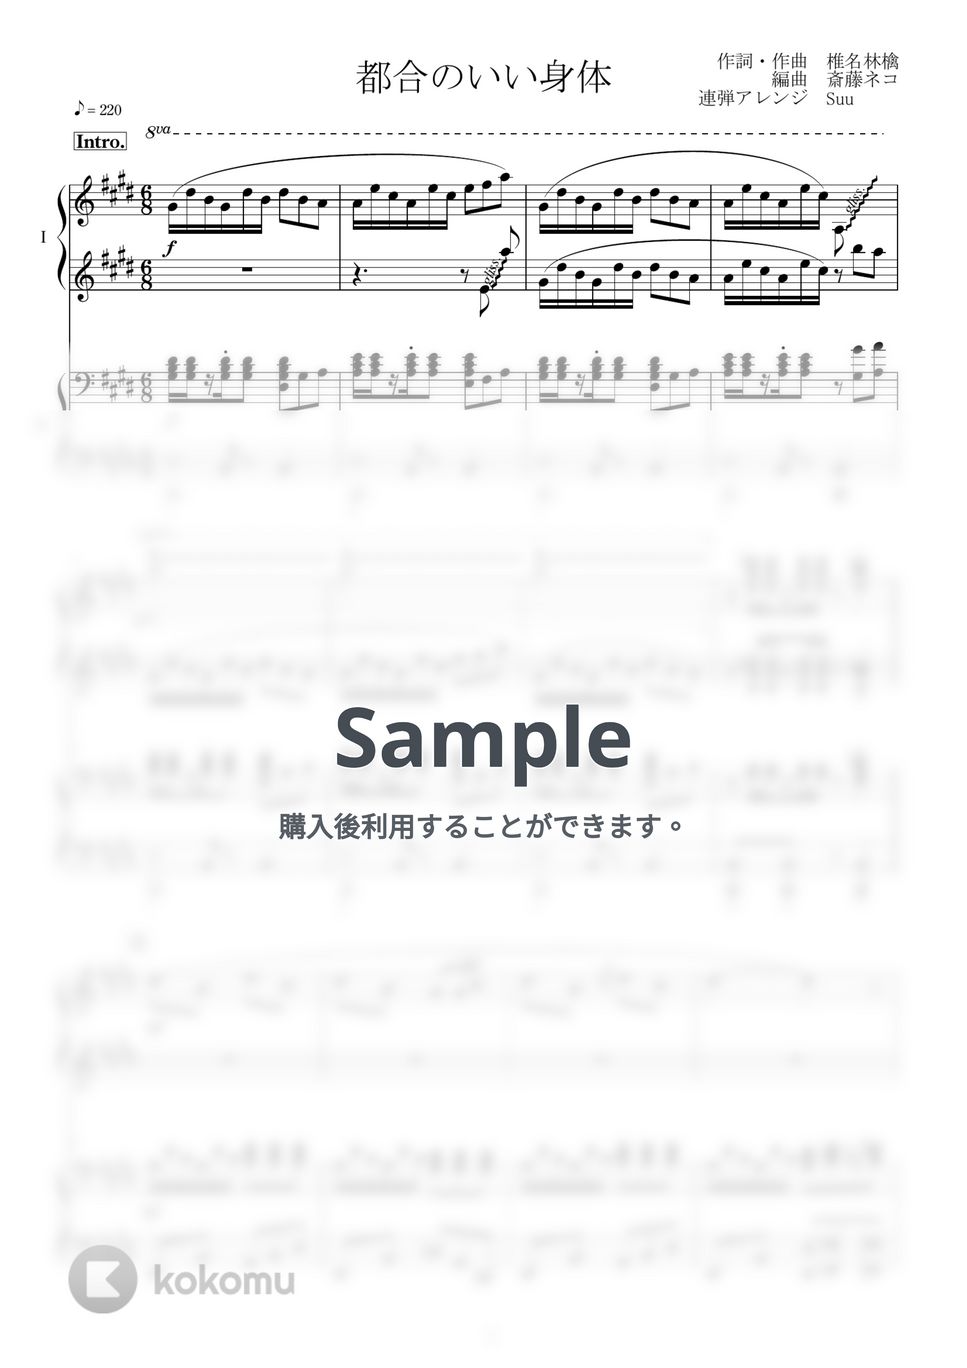 椎名 林檎 - 都合のいい身体 (ピアノ連弾上級) by Suu